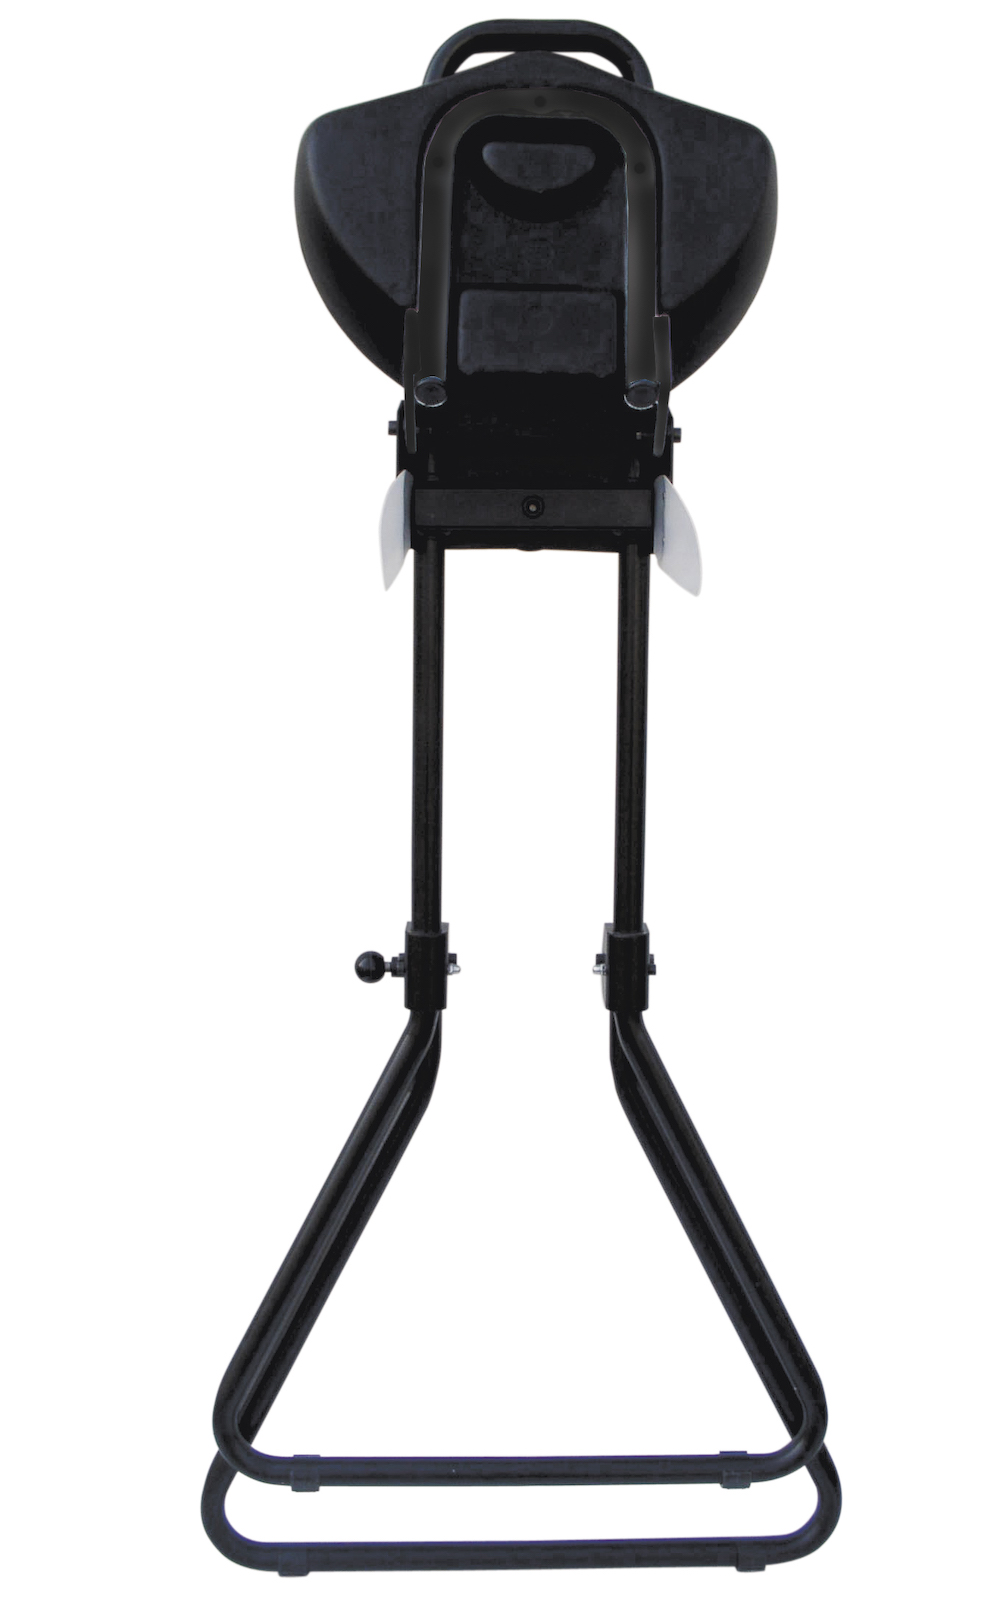 Klappbare Stehhilfe Plus | Sitzhöhe 65-85cm | Tragfähigkeit 100kg | Polyurethane-Sitz | mit Transportrollen | Schwarz/Schwarz